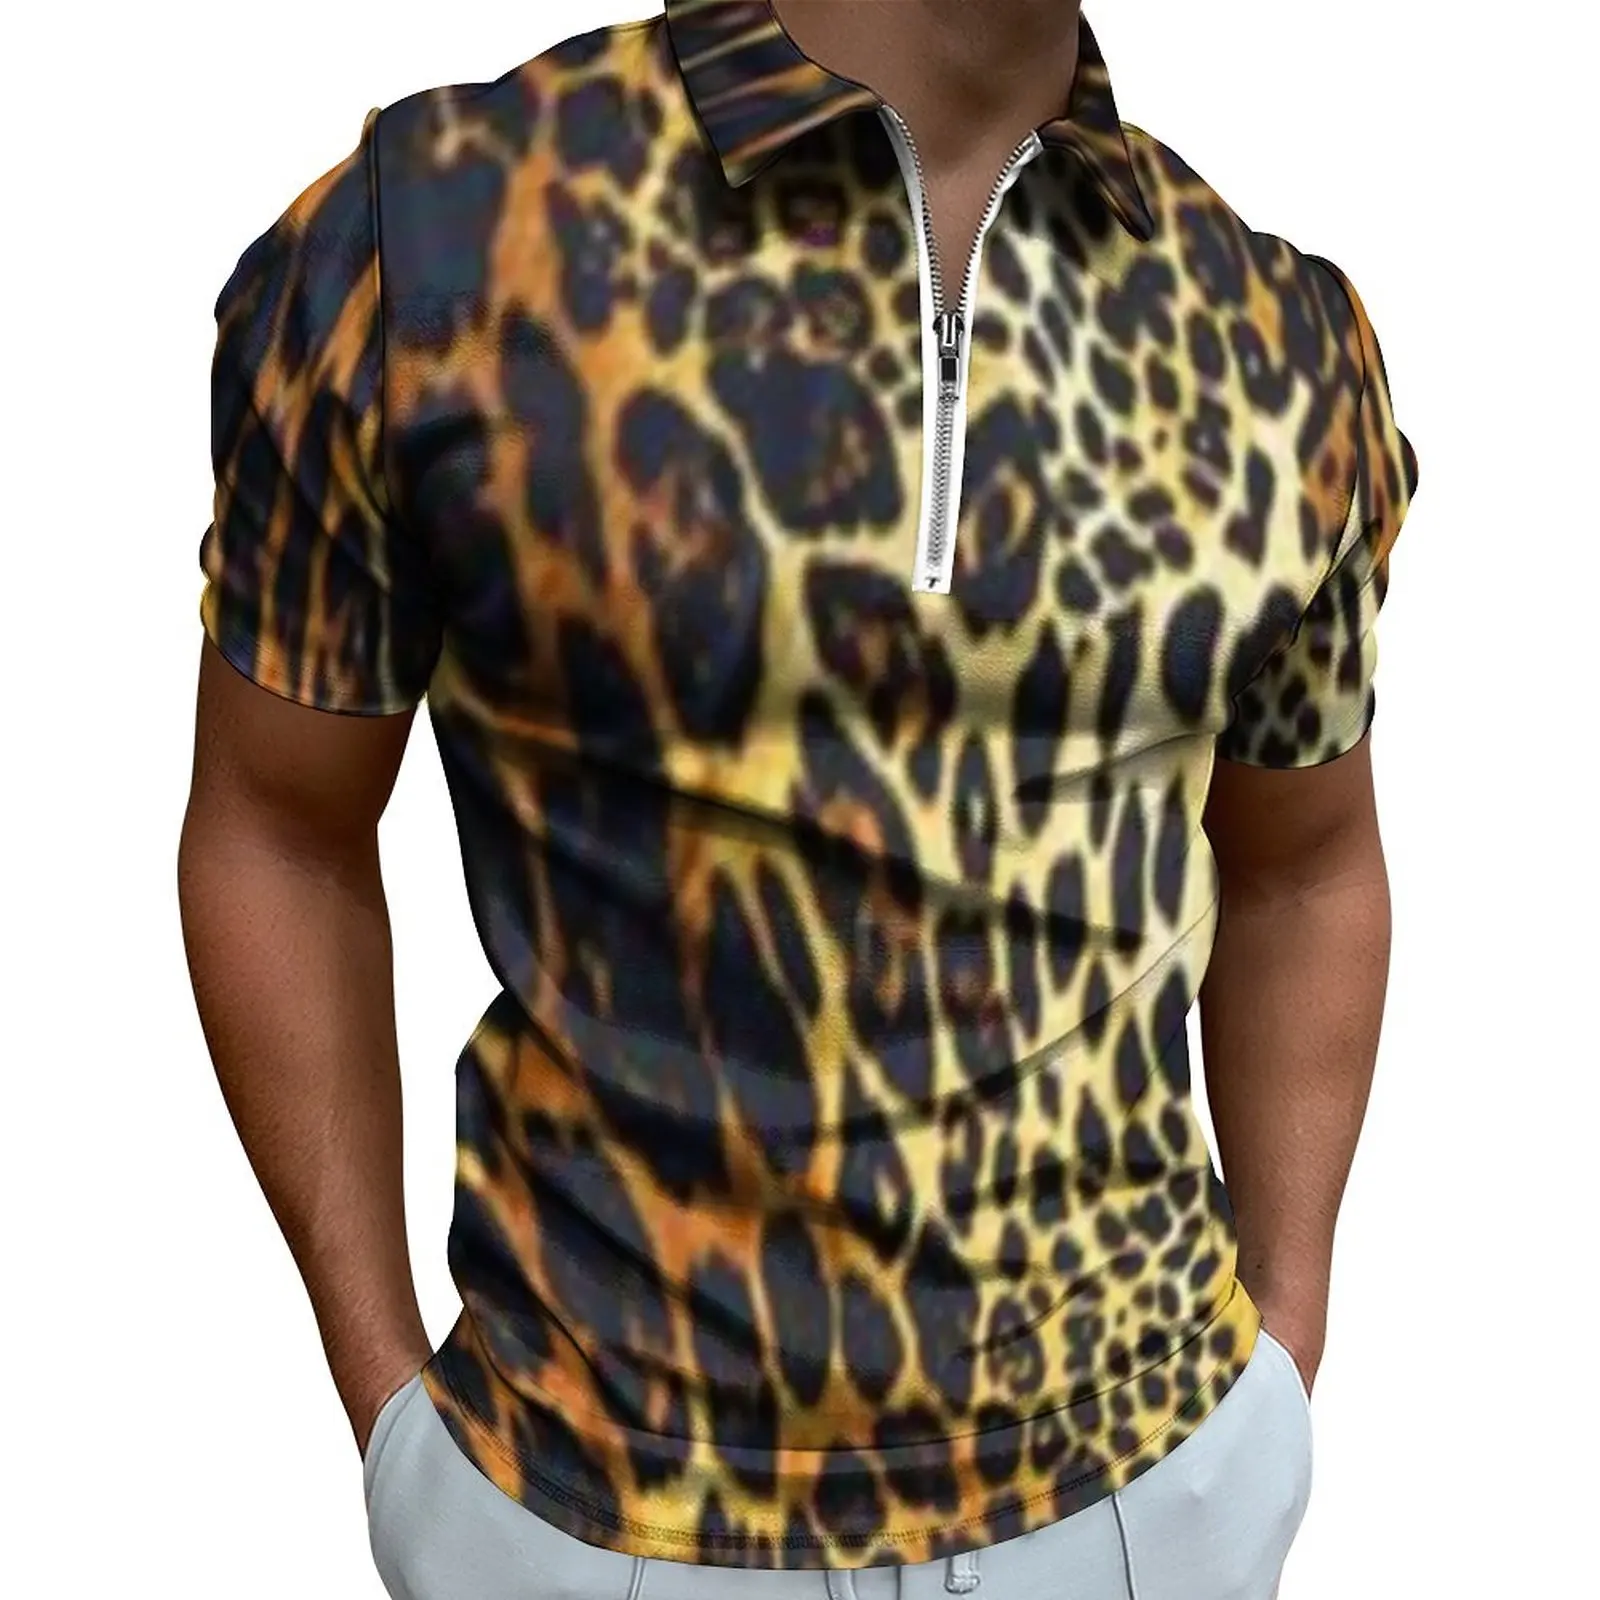 

Рубашка-поло мужская с принтом тигра, Повседневная модная футболка с коротким рукавом и отложным воротником, с графическим принтом диких жи...